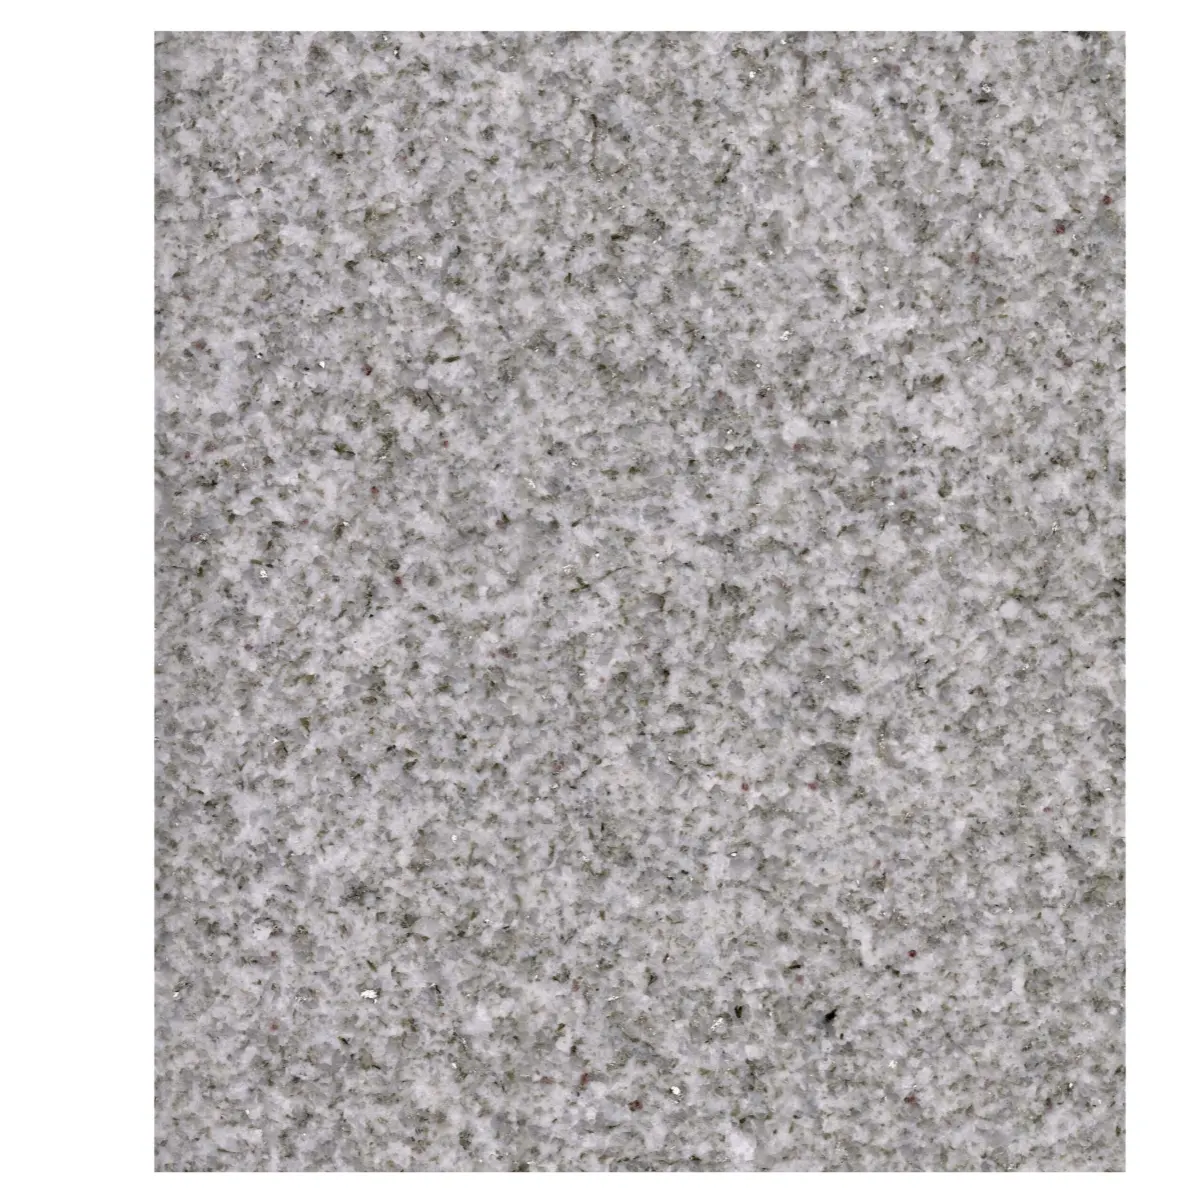 Yüksek kaliteli amerikan platin beyaz granit beyaz doğal granit dış taş